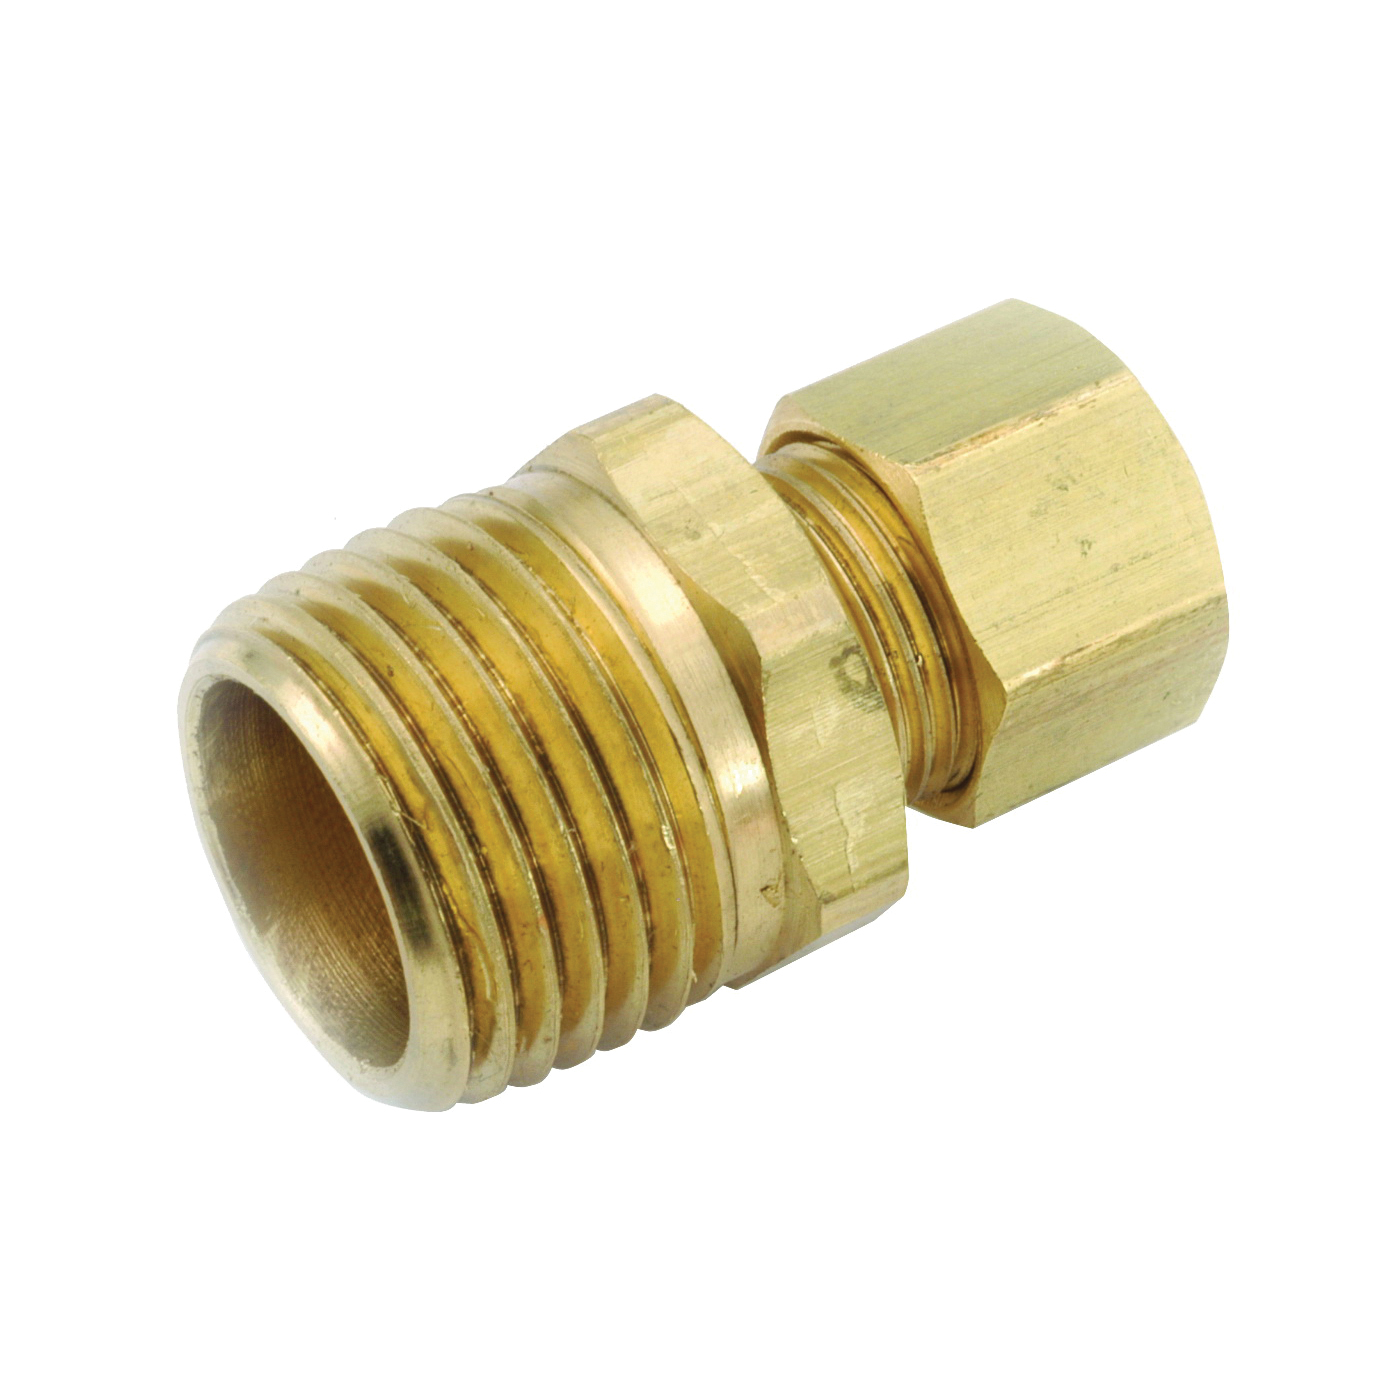 750068-0808 Pipe Connector, 1/2 in, Compression x Male, Brass, 200 psi Pressure